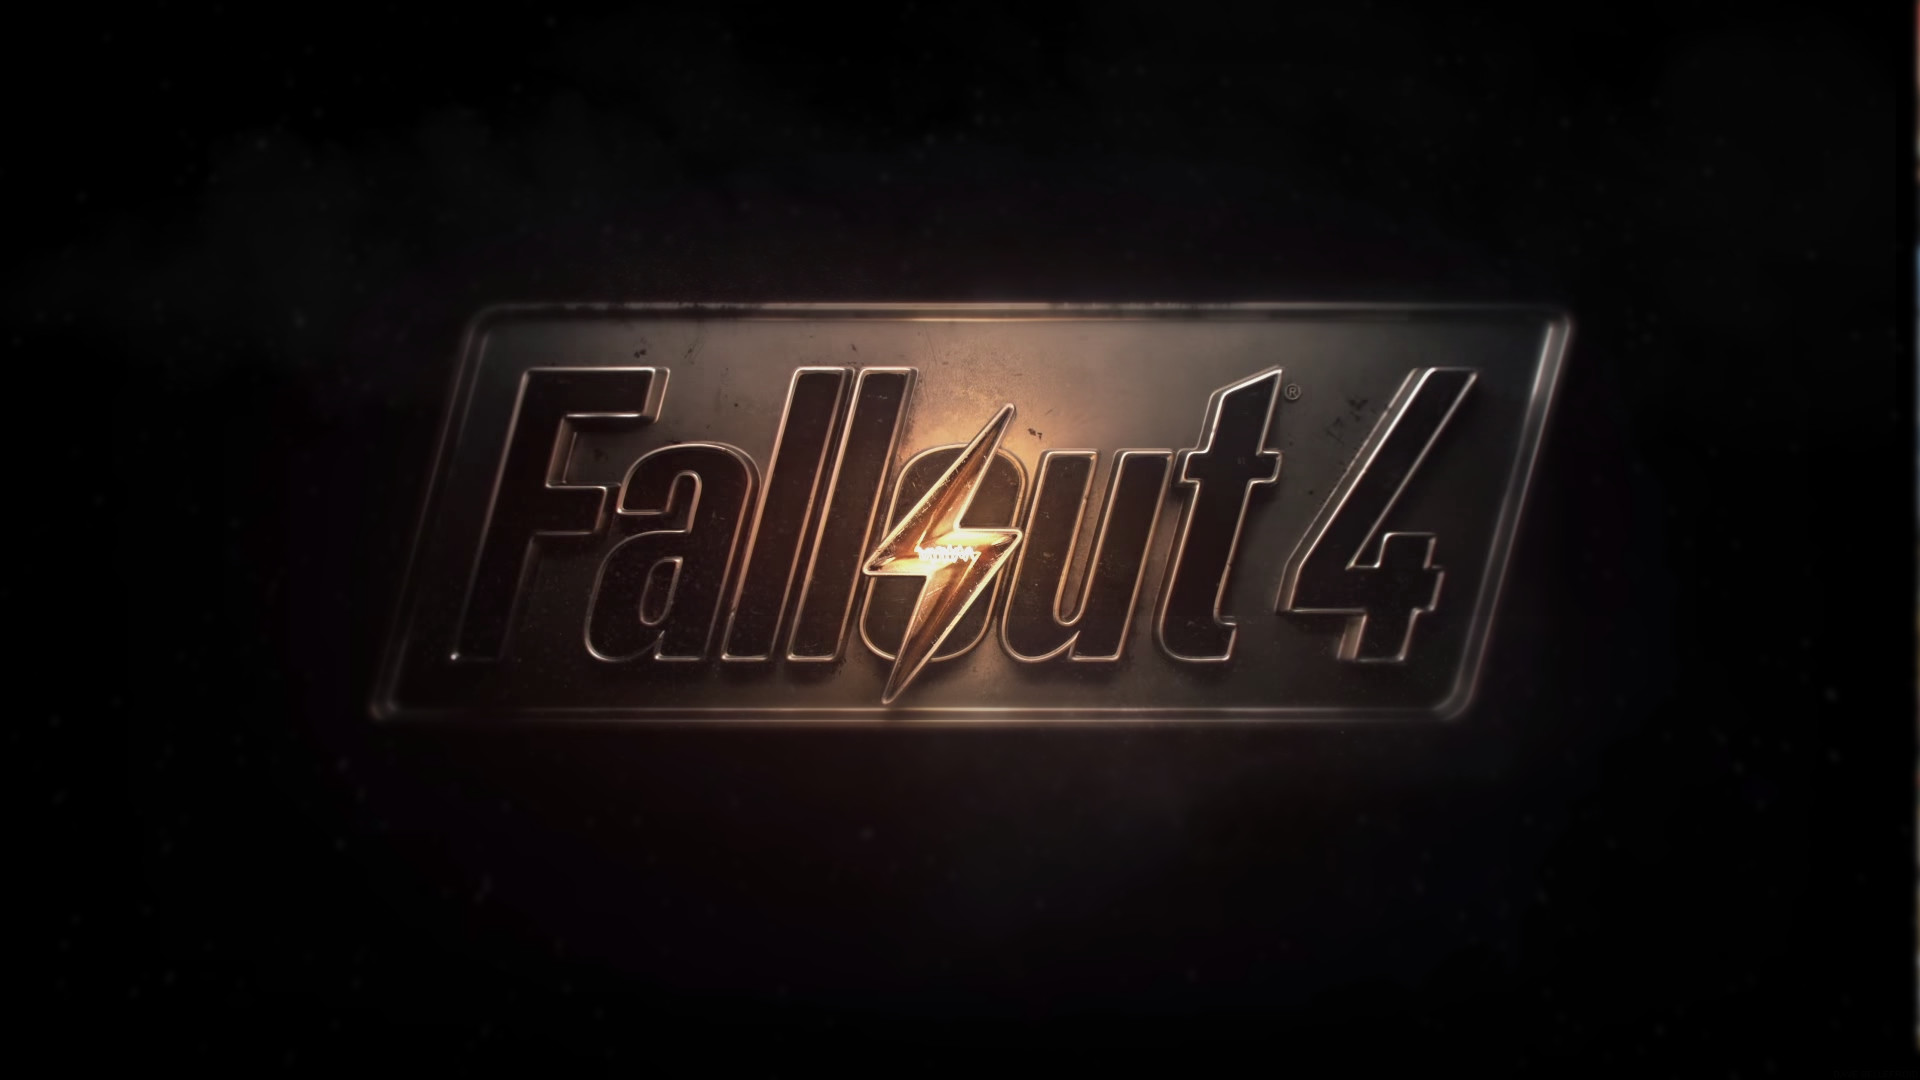 1920x1080 Fallout 4 logo wallpaper, enjoy!